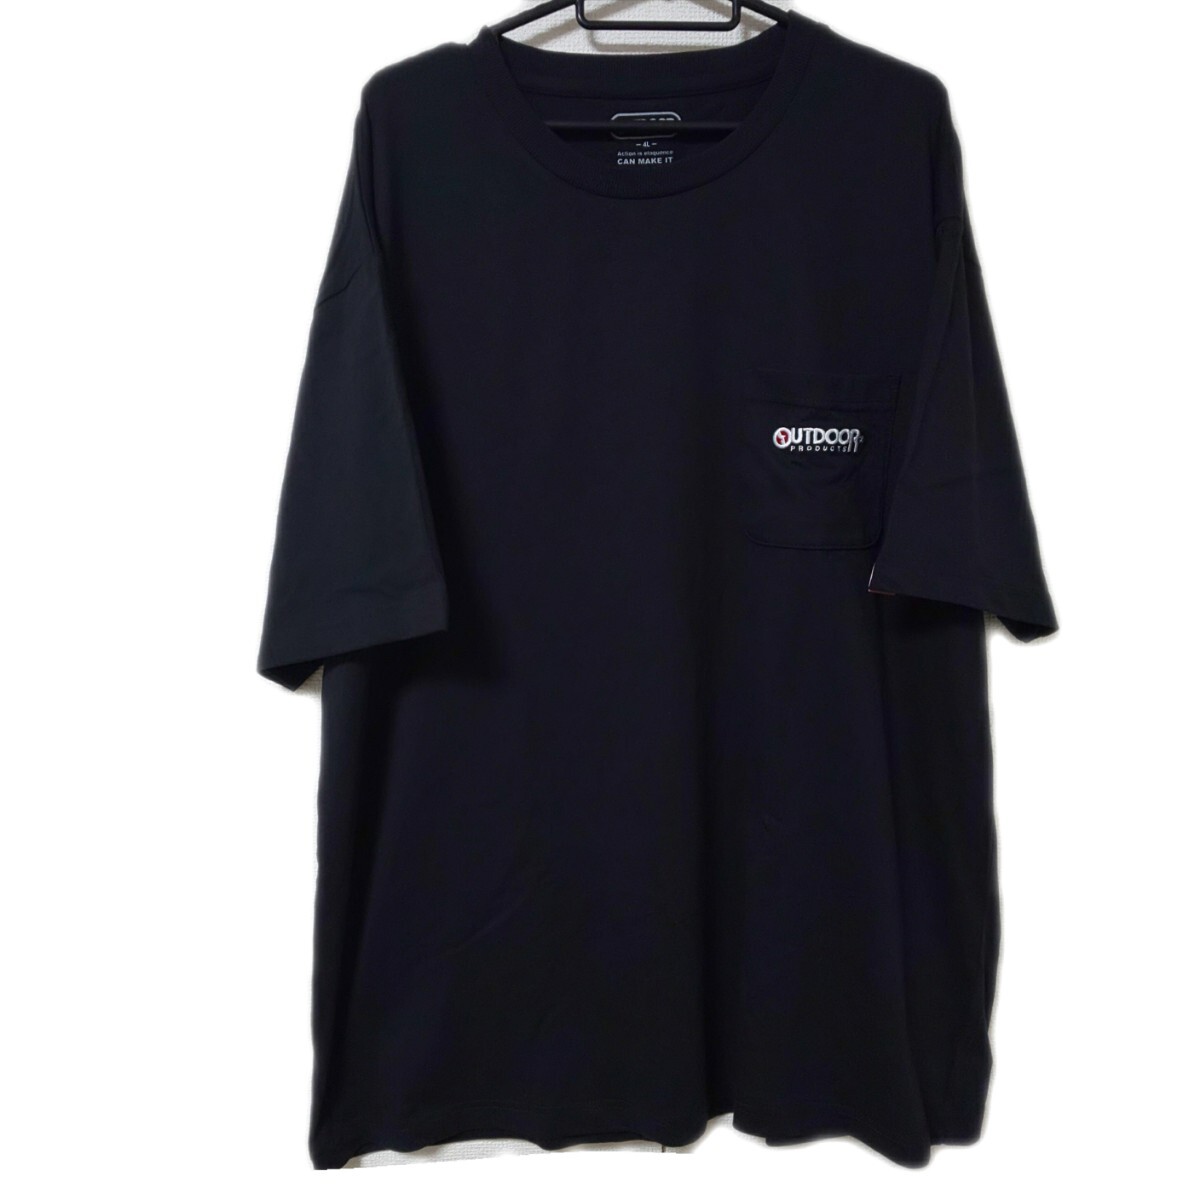 新品 4L OUTDOOR PRODUCTS 半袖 Tシャツ 黒 大きいサイズ 未使用 トップス 3XL ブラック 胸ポケット _画像1